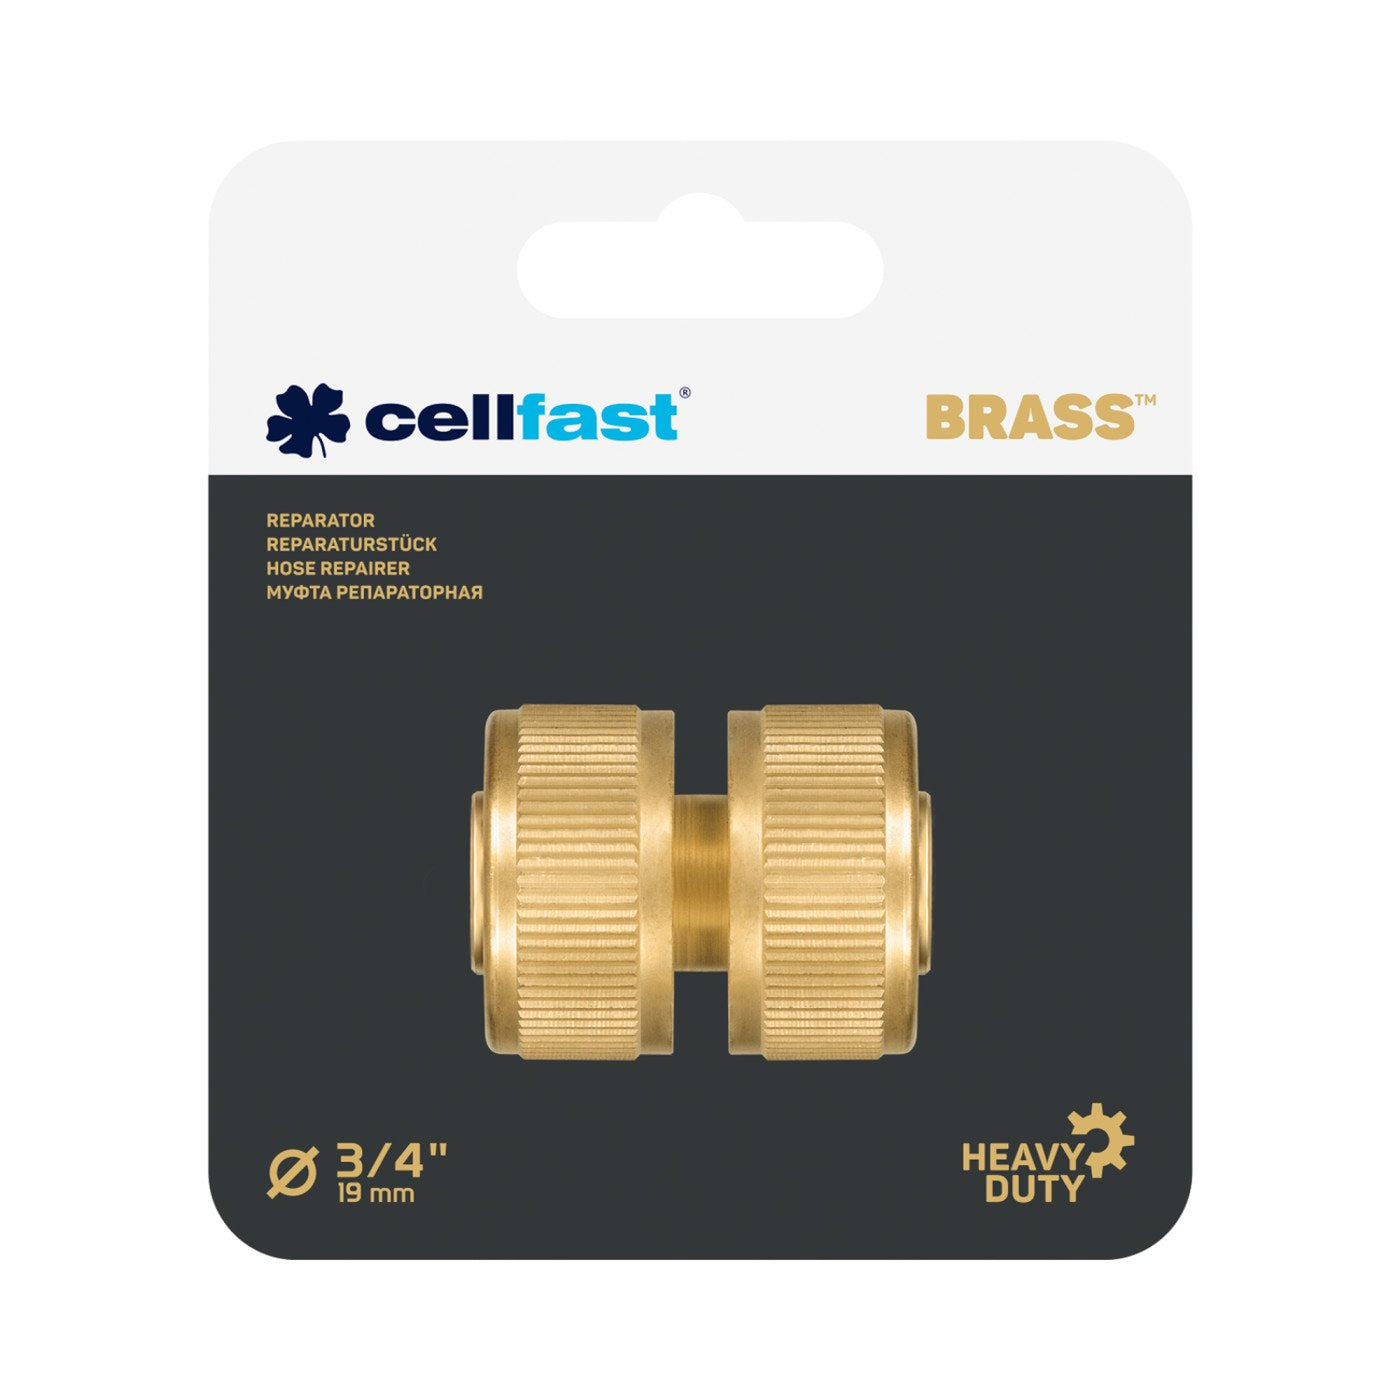 Reparator mosiężny 52-805 3/4" Cellfast Brass mosiądz